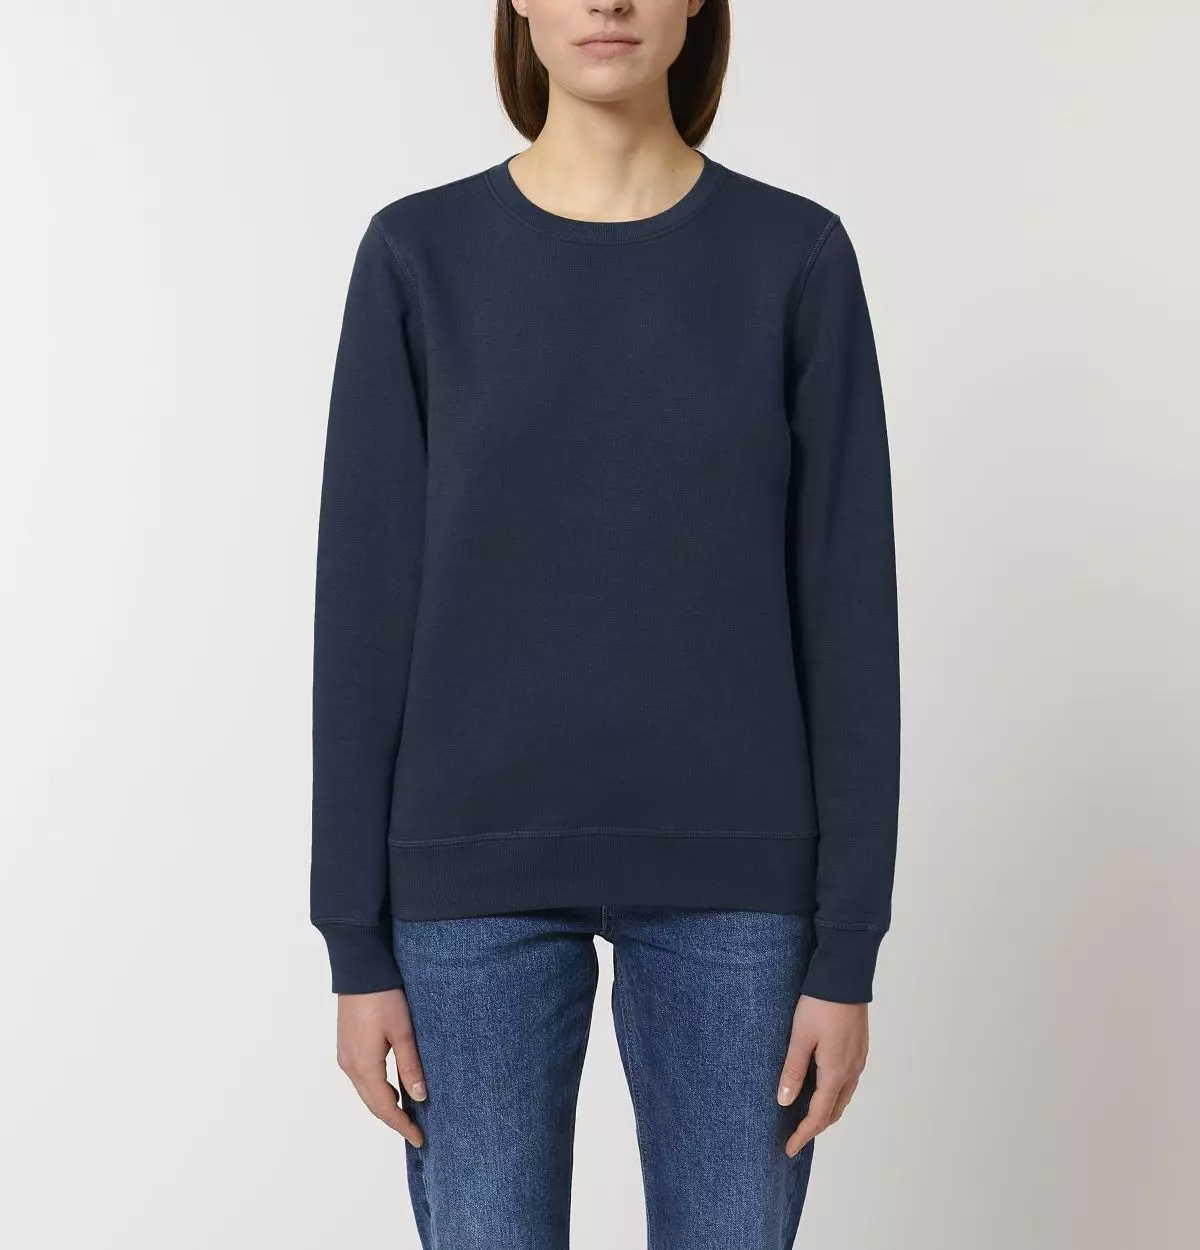 Sweater Modell: Rolin